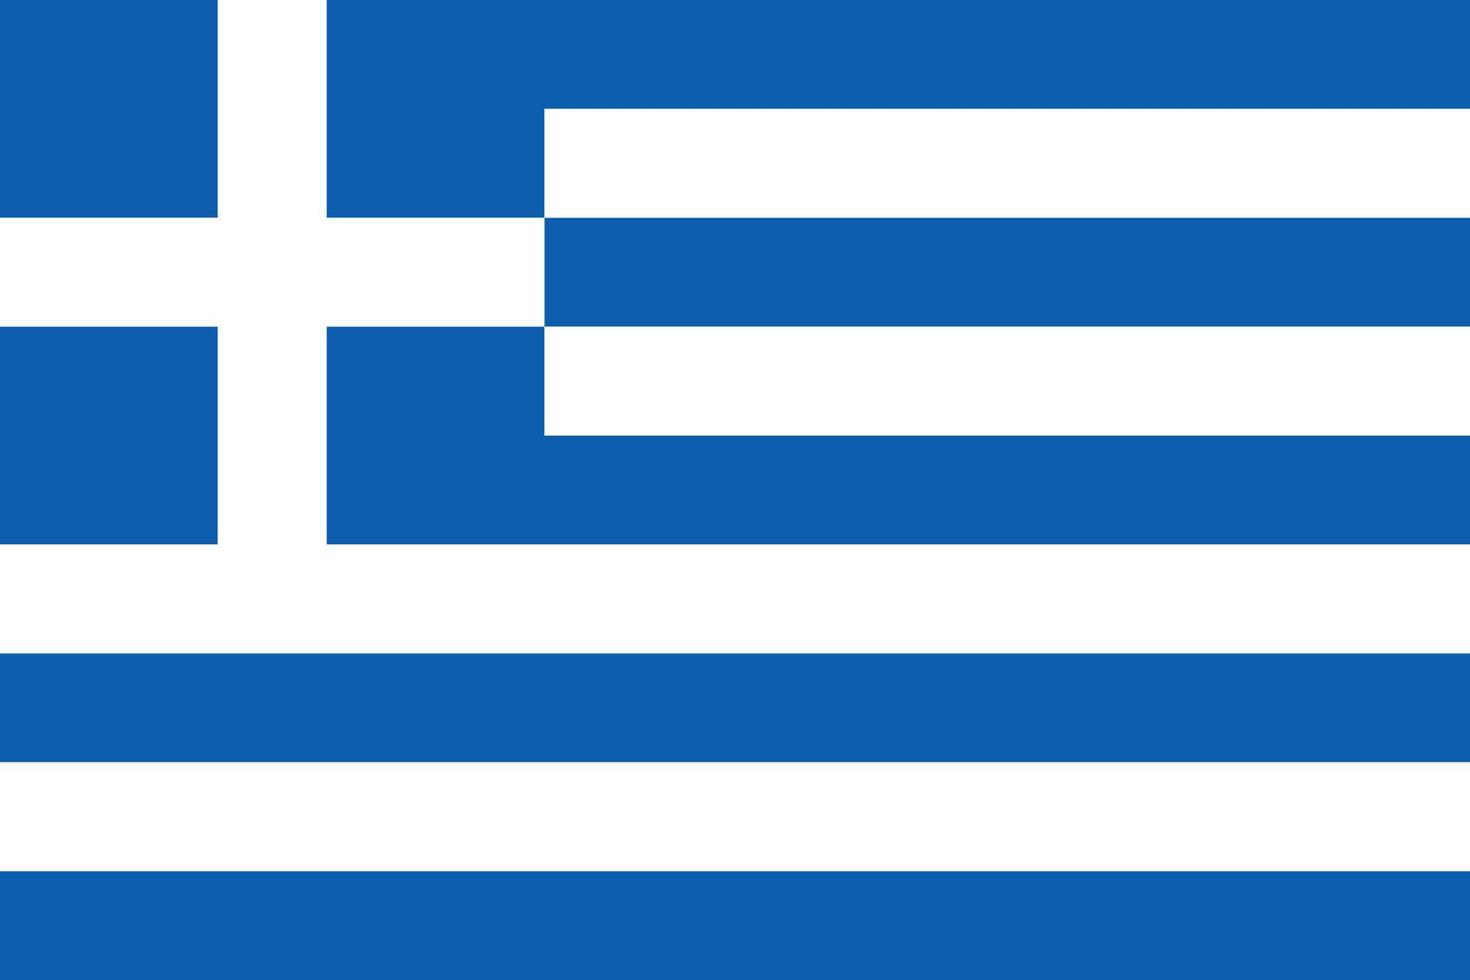 Grécia simples bandeira corrigir tamanho, proporção, cores. vetor